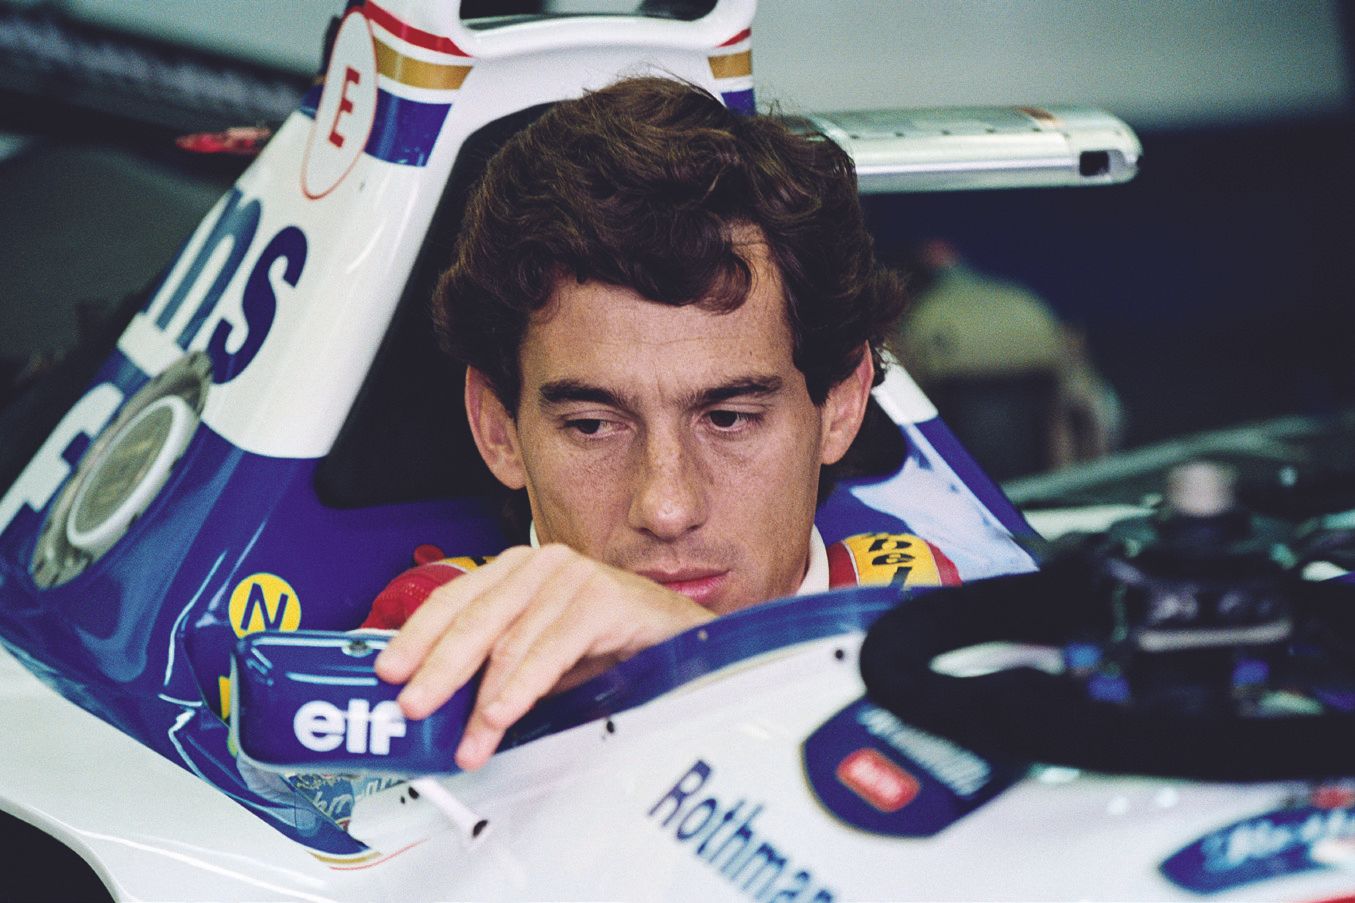 AFP - Jean-Loup GAUTREAU AFP - Jean-Loup GAUTREAU

Ayrton Senna am 1. Mai 1994 v&hellip;